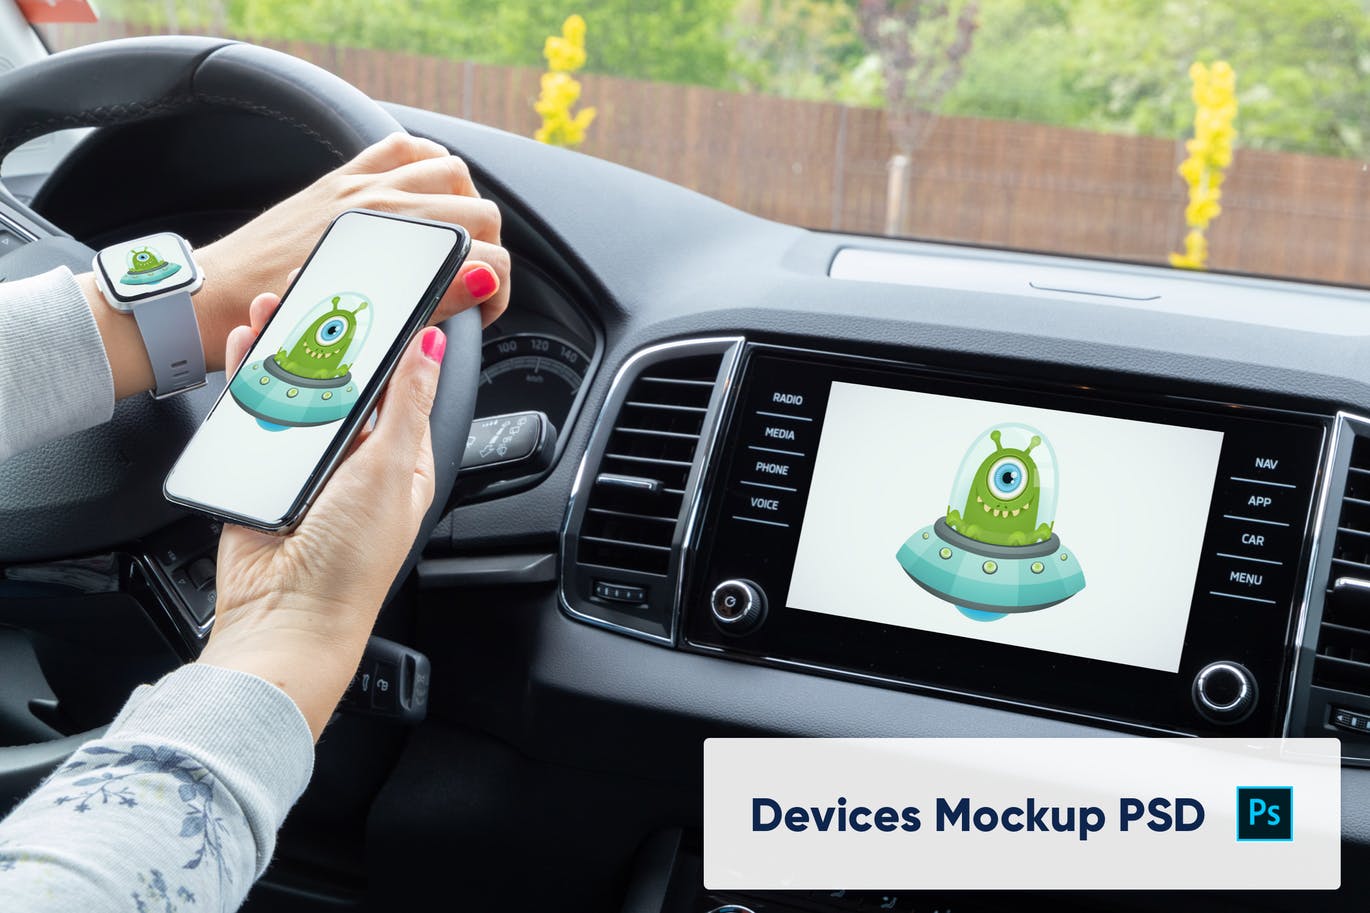 车内场景多设备屏幕预览样机PSD模板 Phone, Smart Watch and Car Display Mockup – PSD设计素材模板